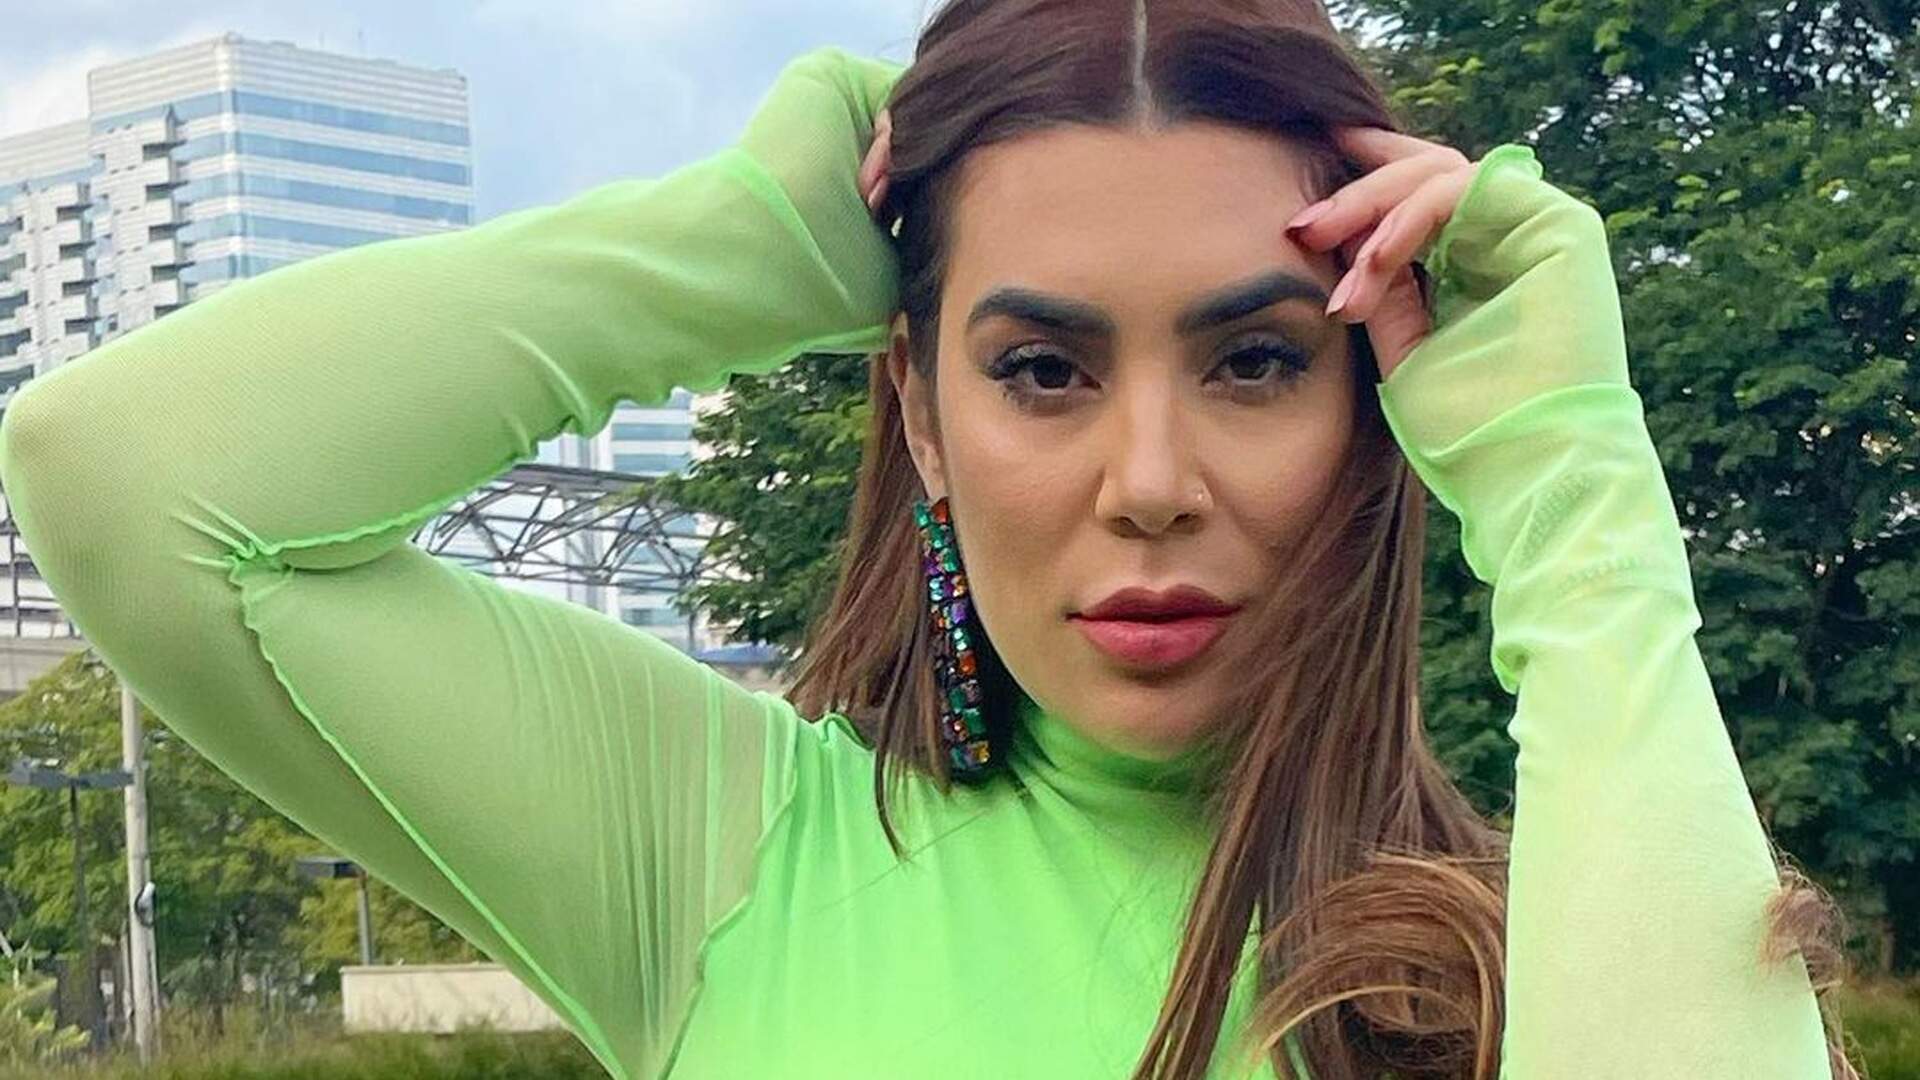 Naiara Azevedo aposta em peças neon para compor look do feriadão: “Cara de domingo” - Metropolitana FM